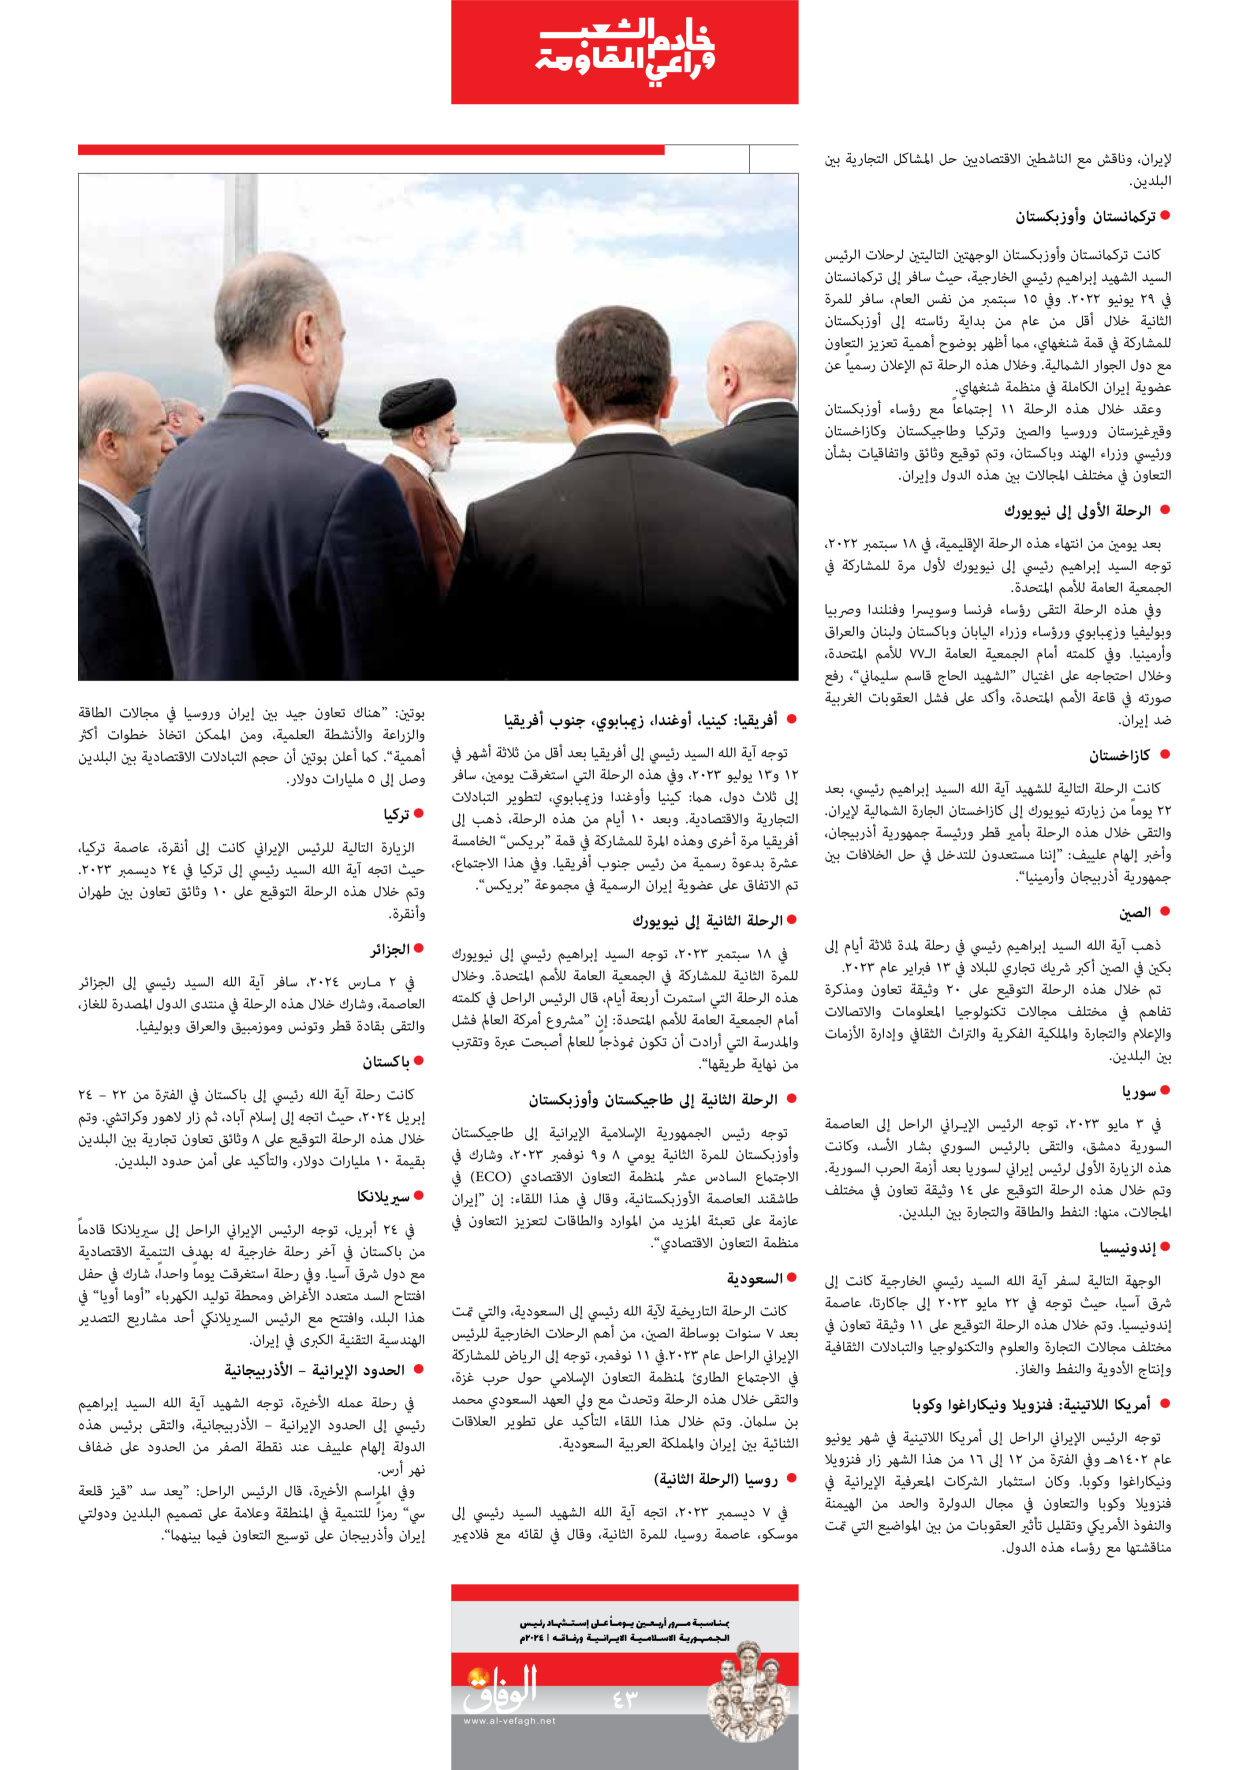 صحیفة ایران الدولیة الوفاق - ملحق ویژه نامه چهلم شهید رییسی - ٢٩ يونيو ٢٠٢٤ - الصفحة ٤۳